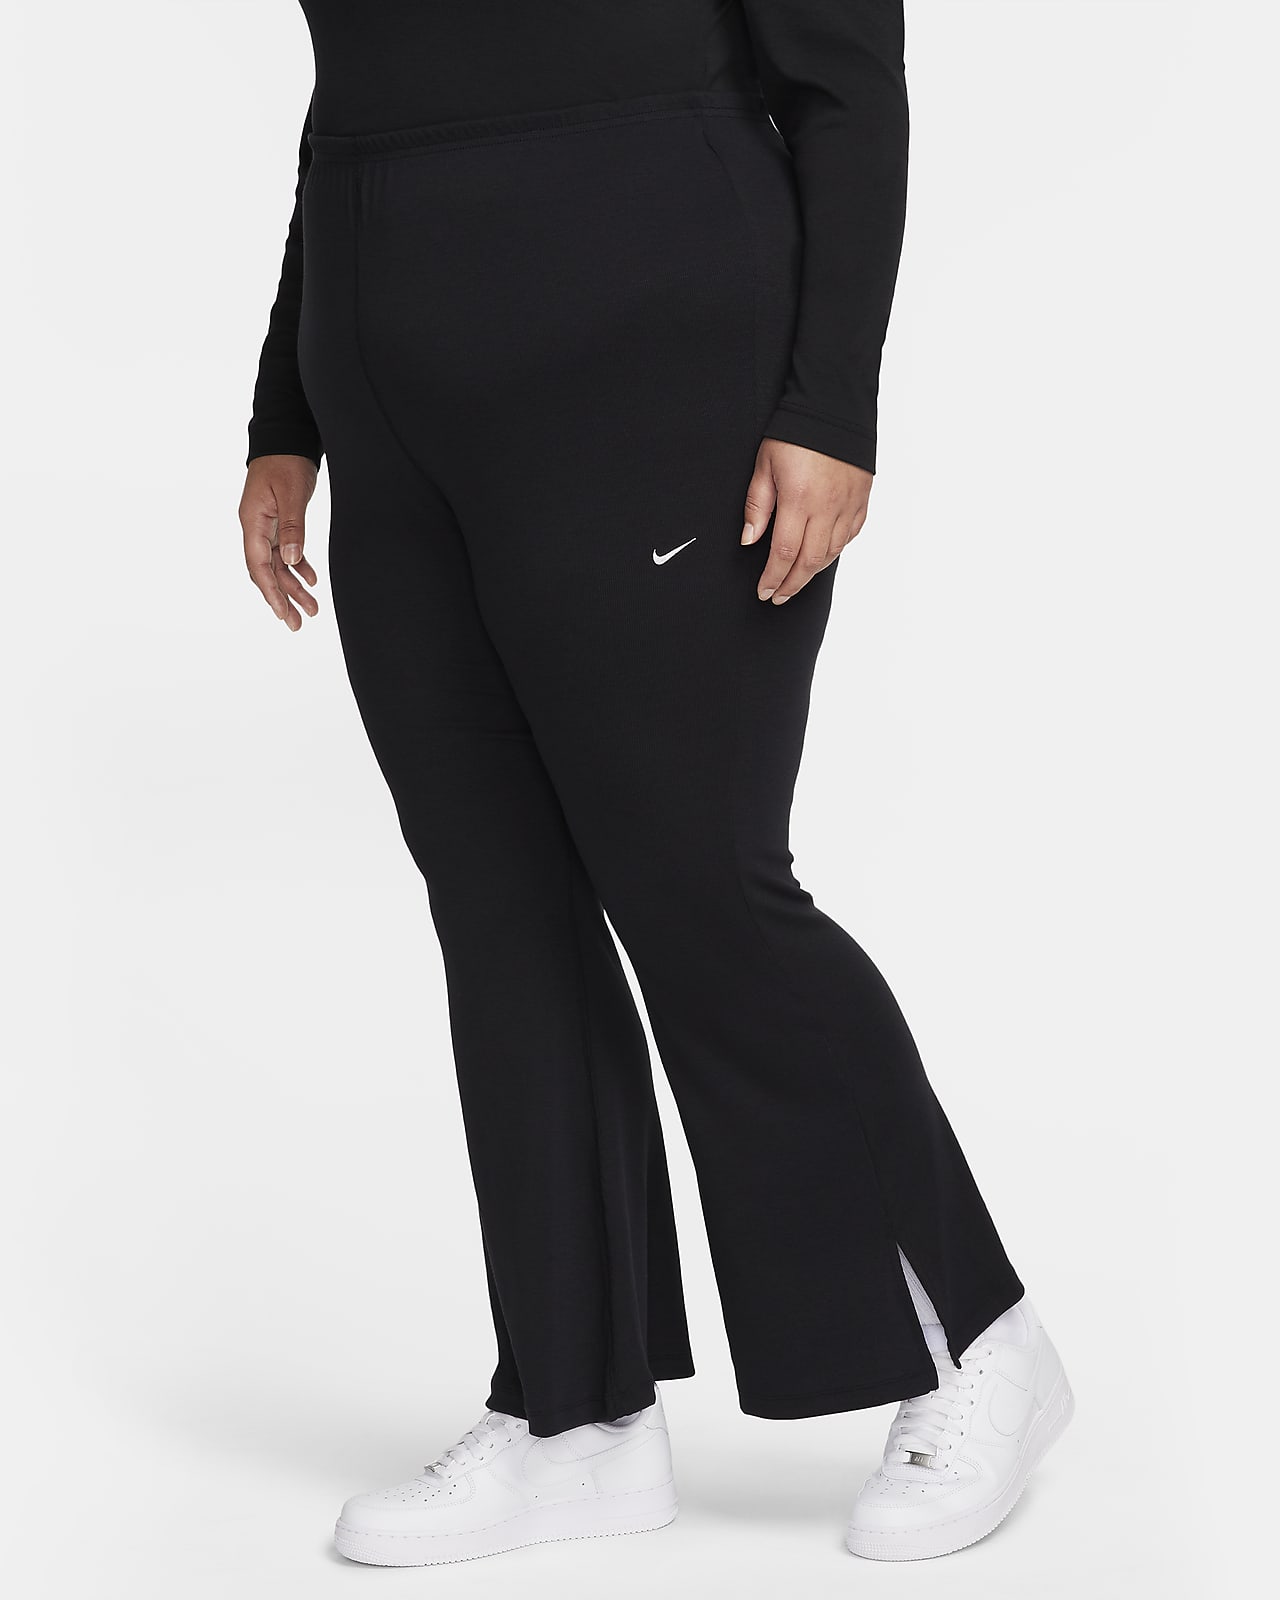 Nike Sportswear Chill Knit Eng anliegende Mini-Rib-Leggings mit ausgestelltem Bein für Damen (große Größe)